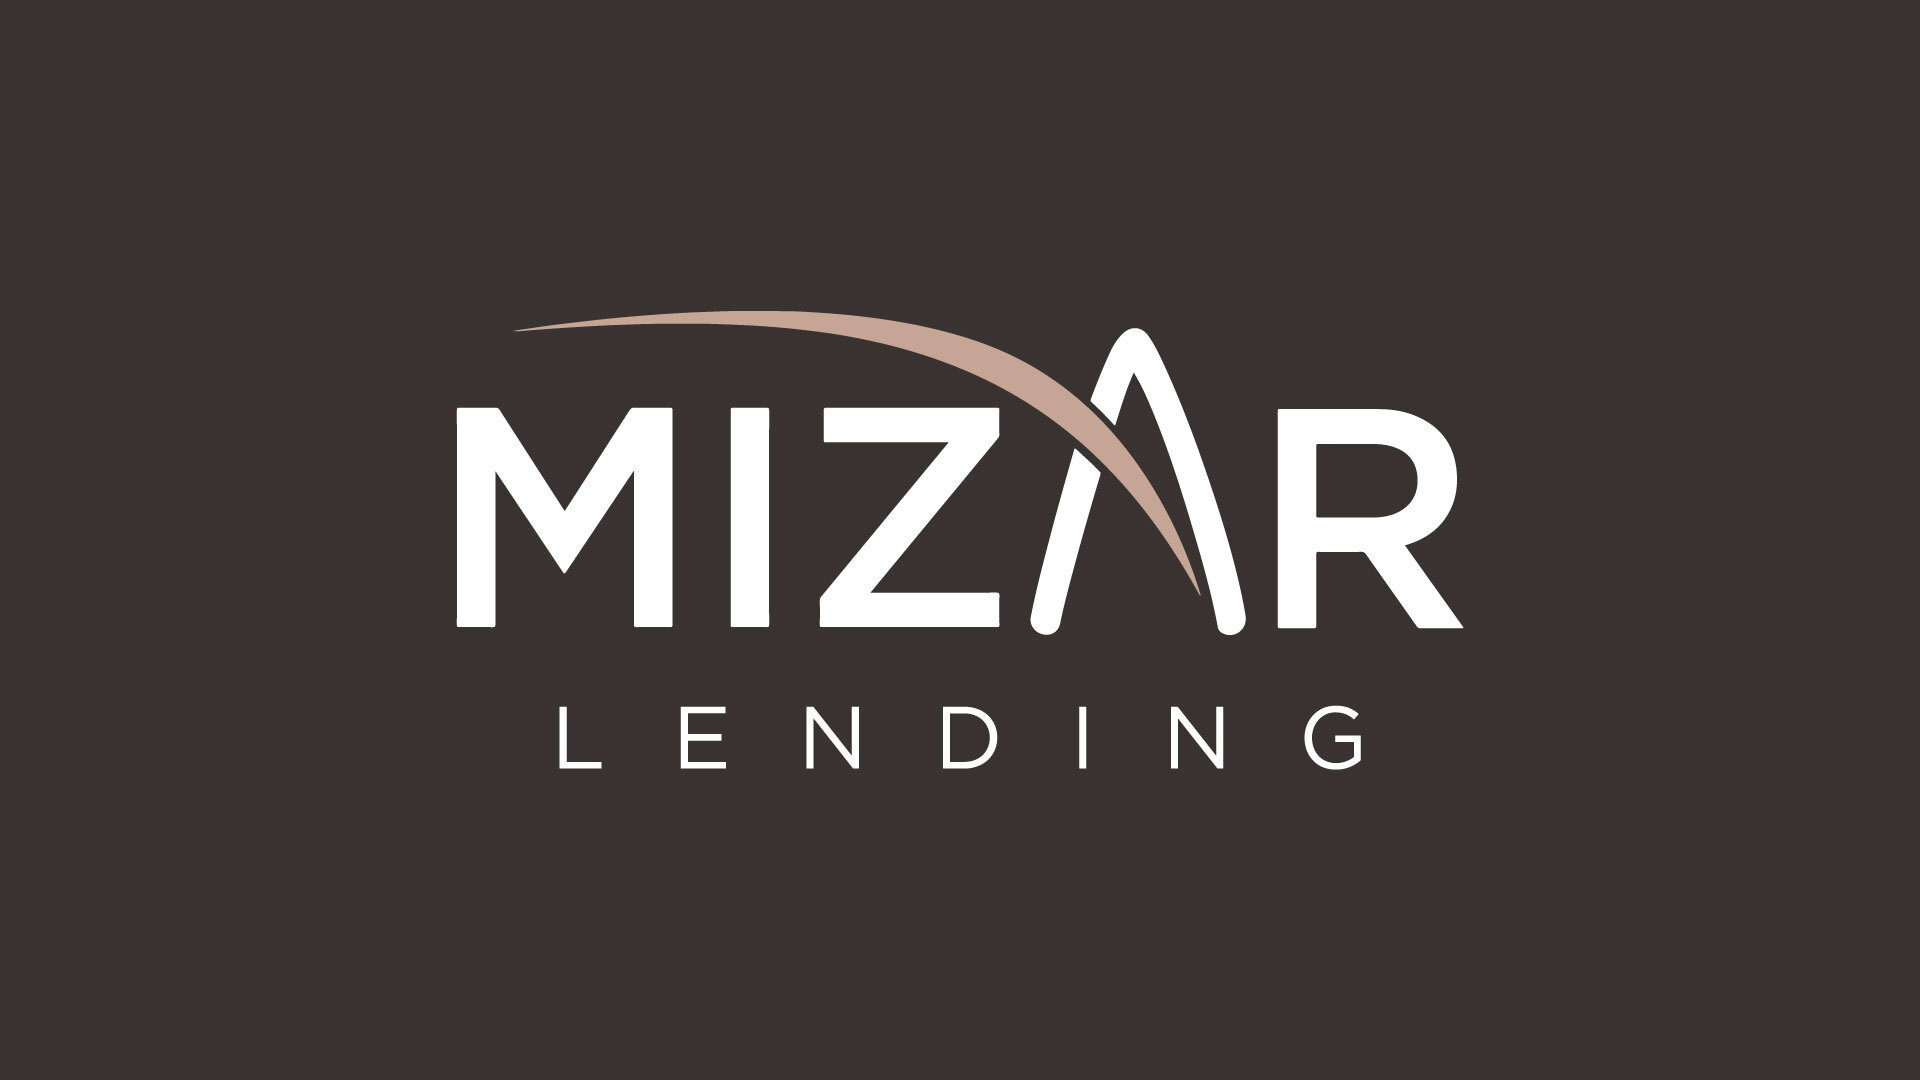 Mizar Lending